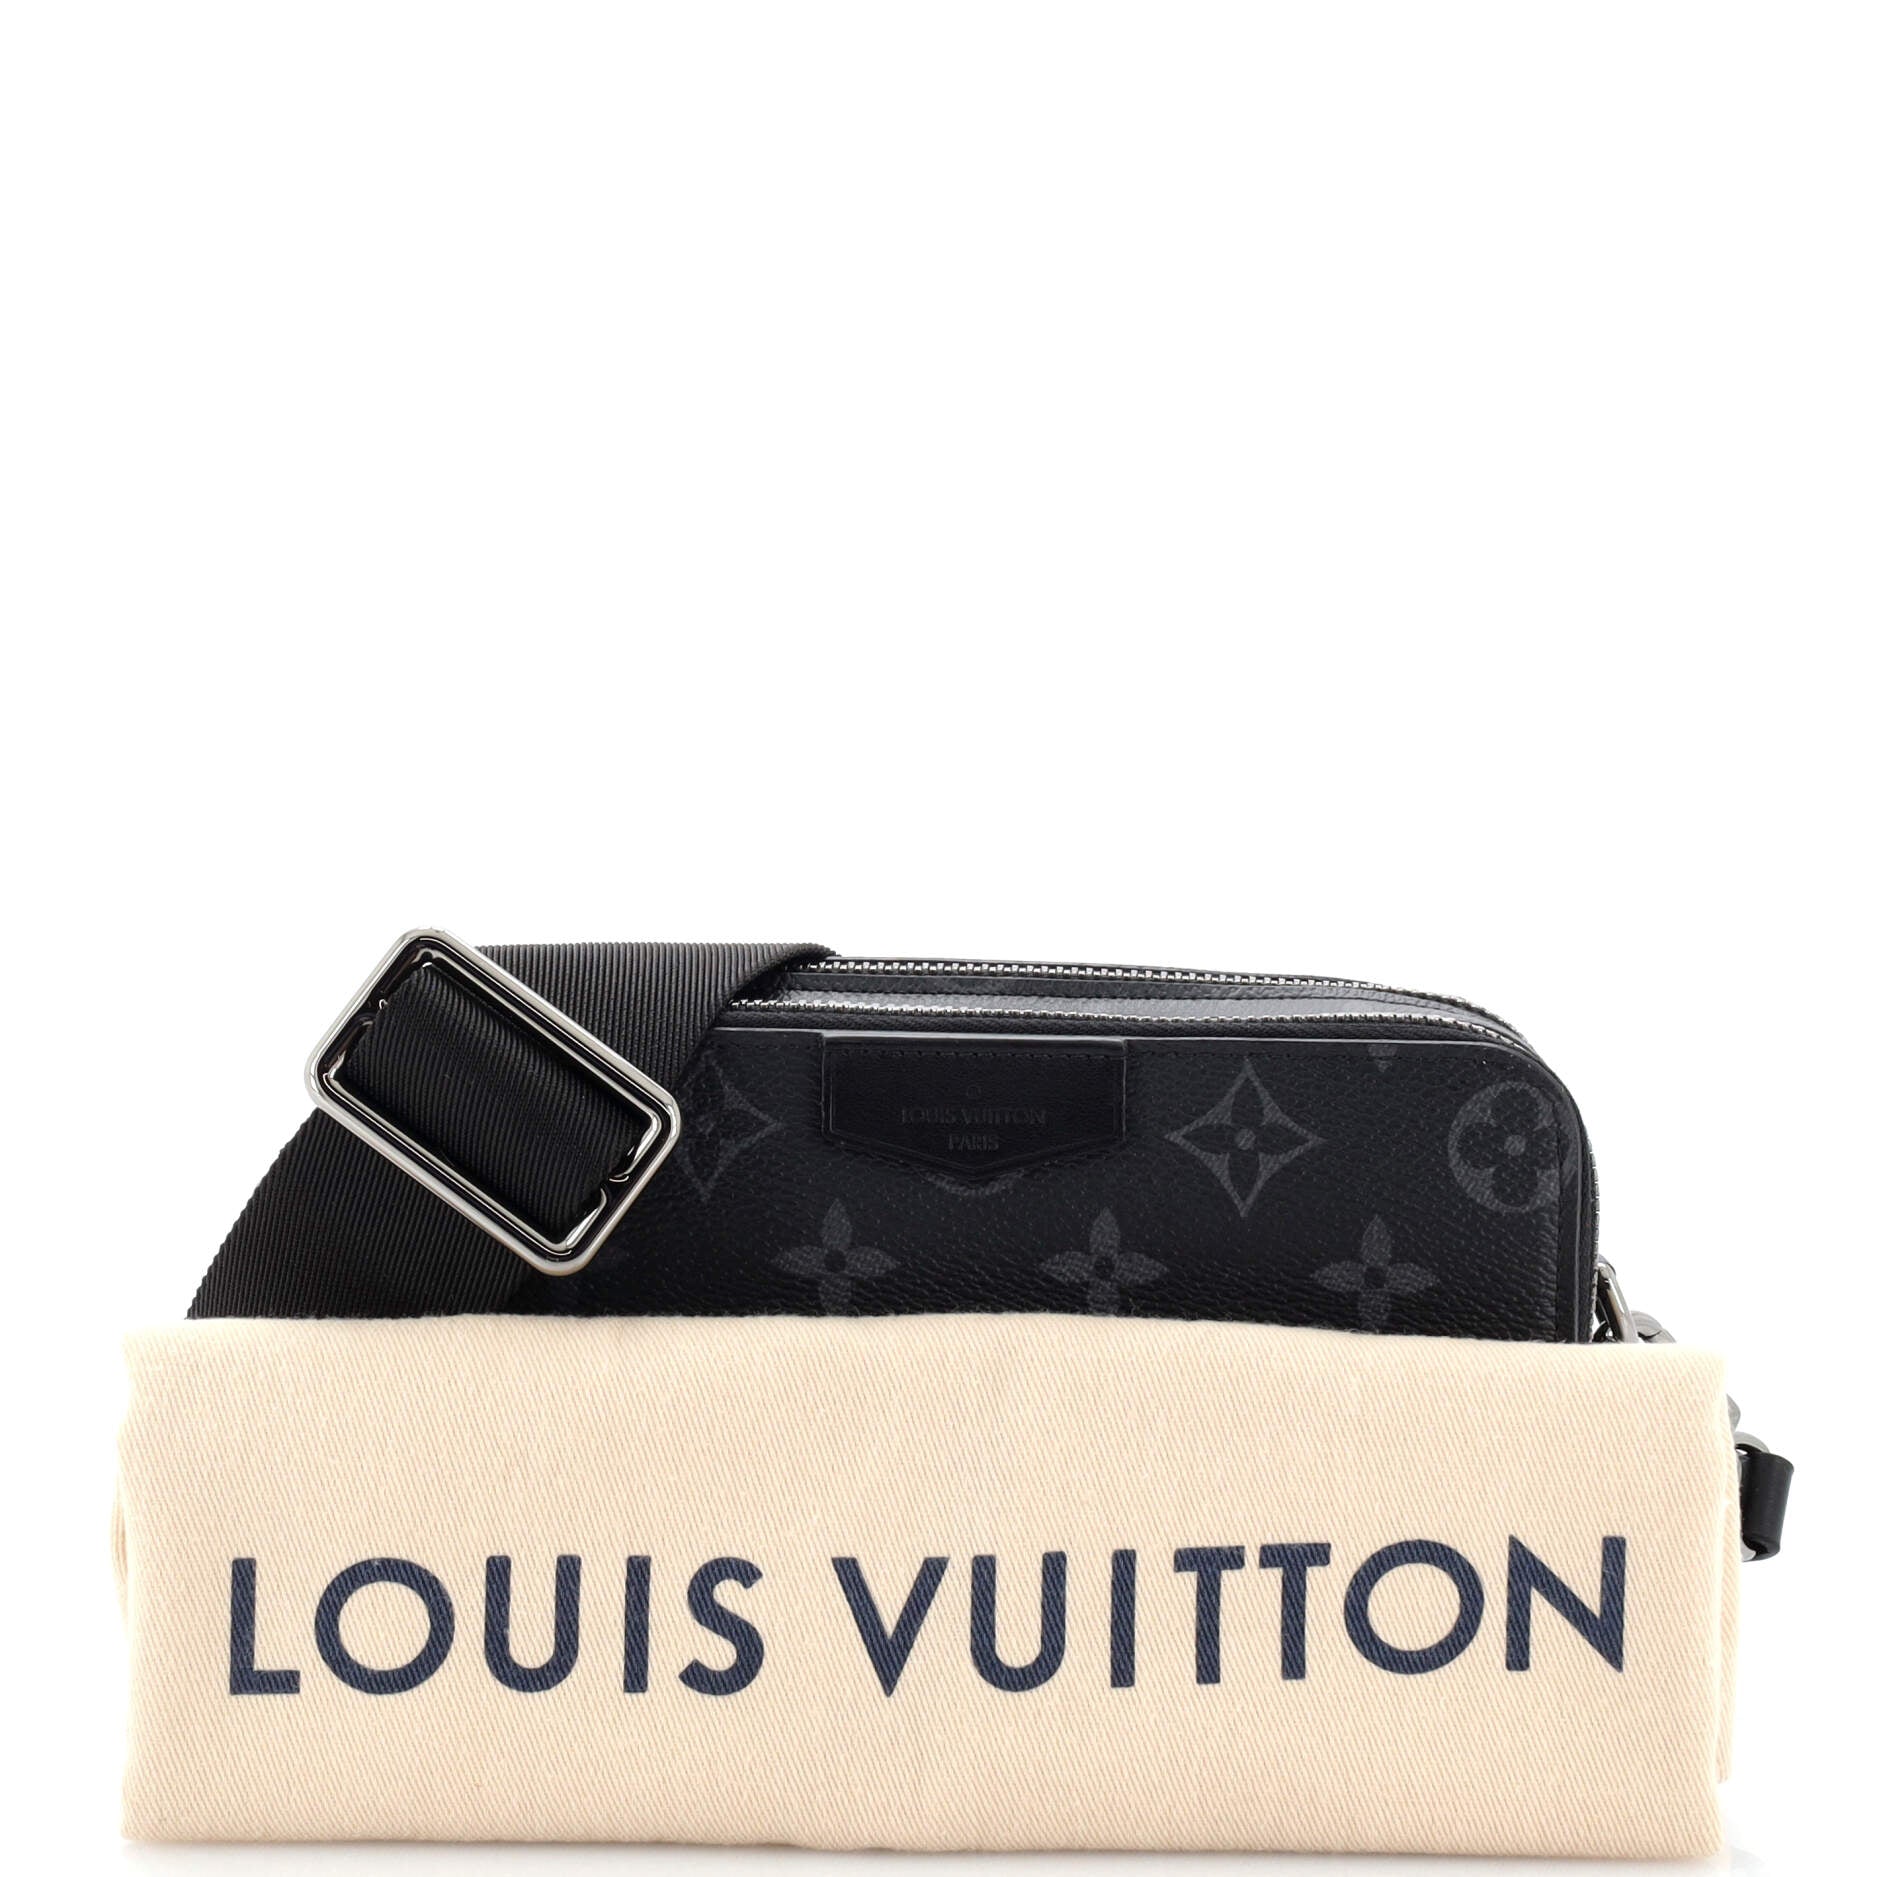 Louis Vuitton - Alpha Nano Bag - Monogram Canvas - Eclipse - Men - Luxury